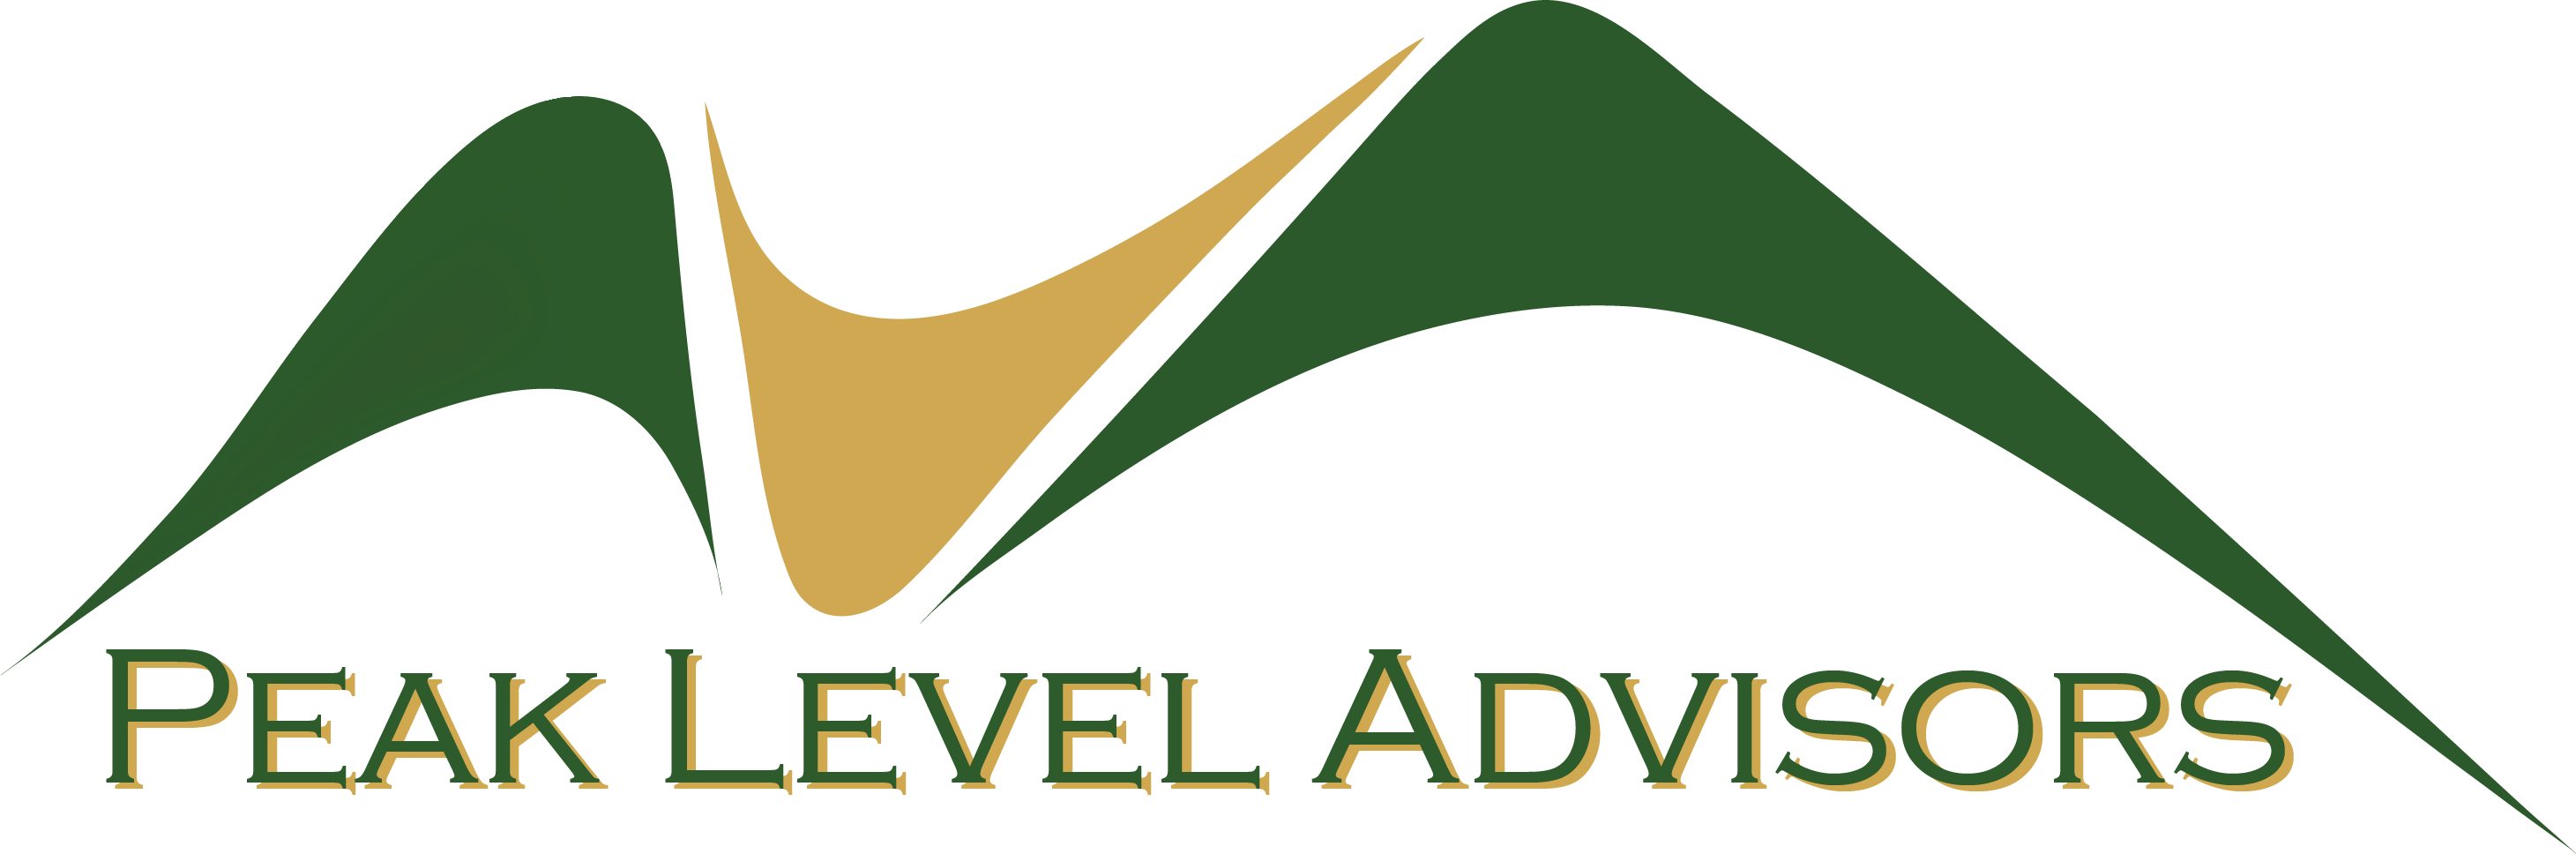 Peak Level Advisors logo